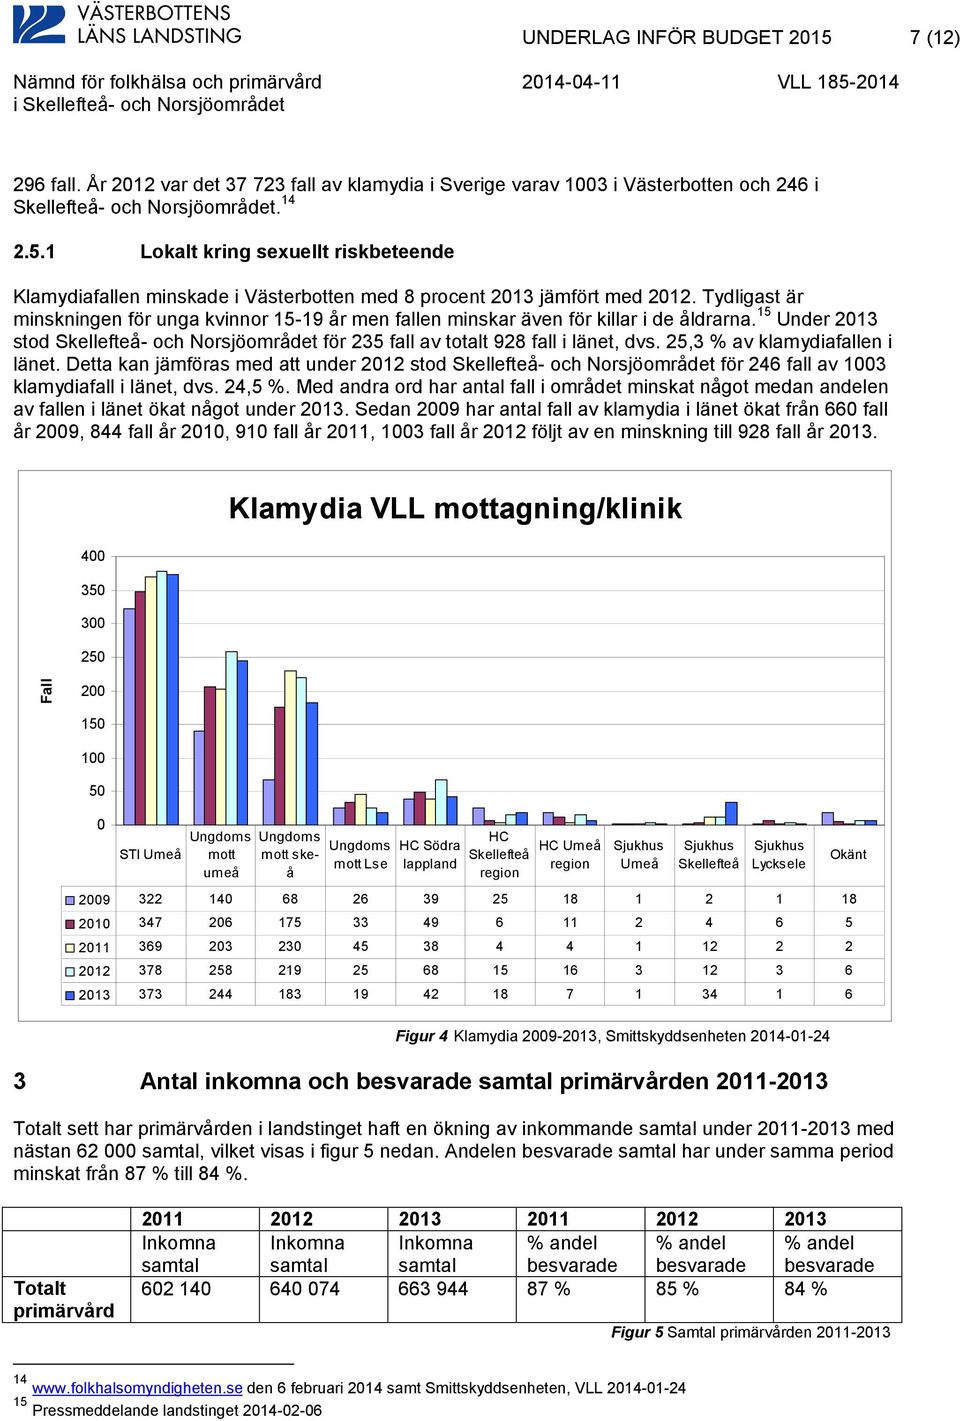 25,3 % av klamydiafallen i länet. Detta kan jämföras med att under 2012 stod Skellefteå- och Norsjöområdet för 246 fall av 1003 klamydiafall i länet, dvs. 24,5 %.